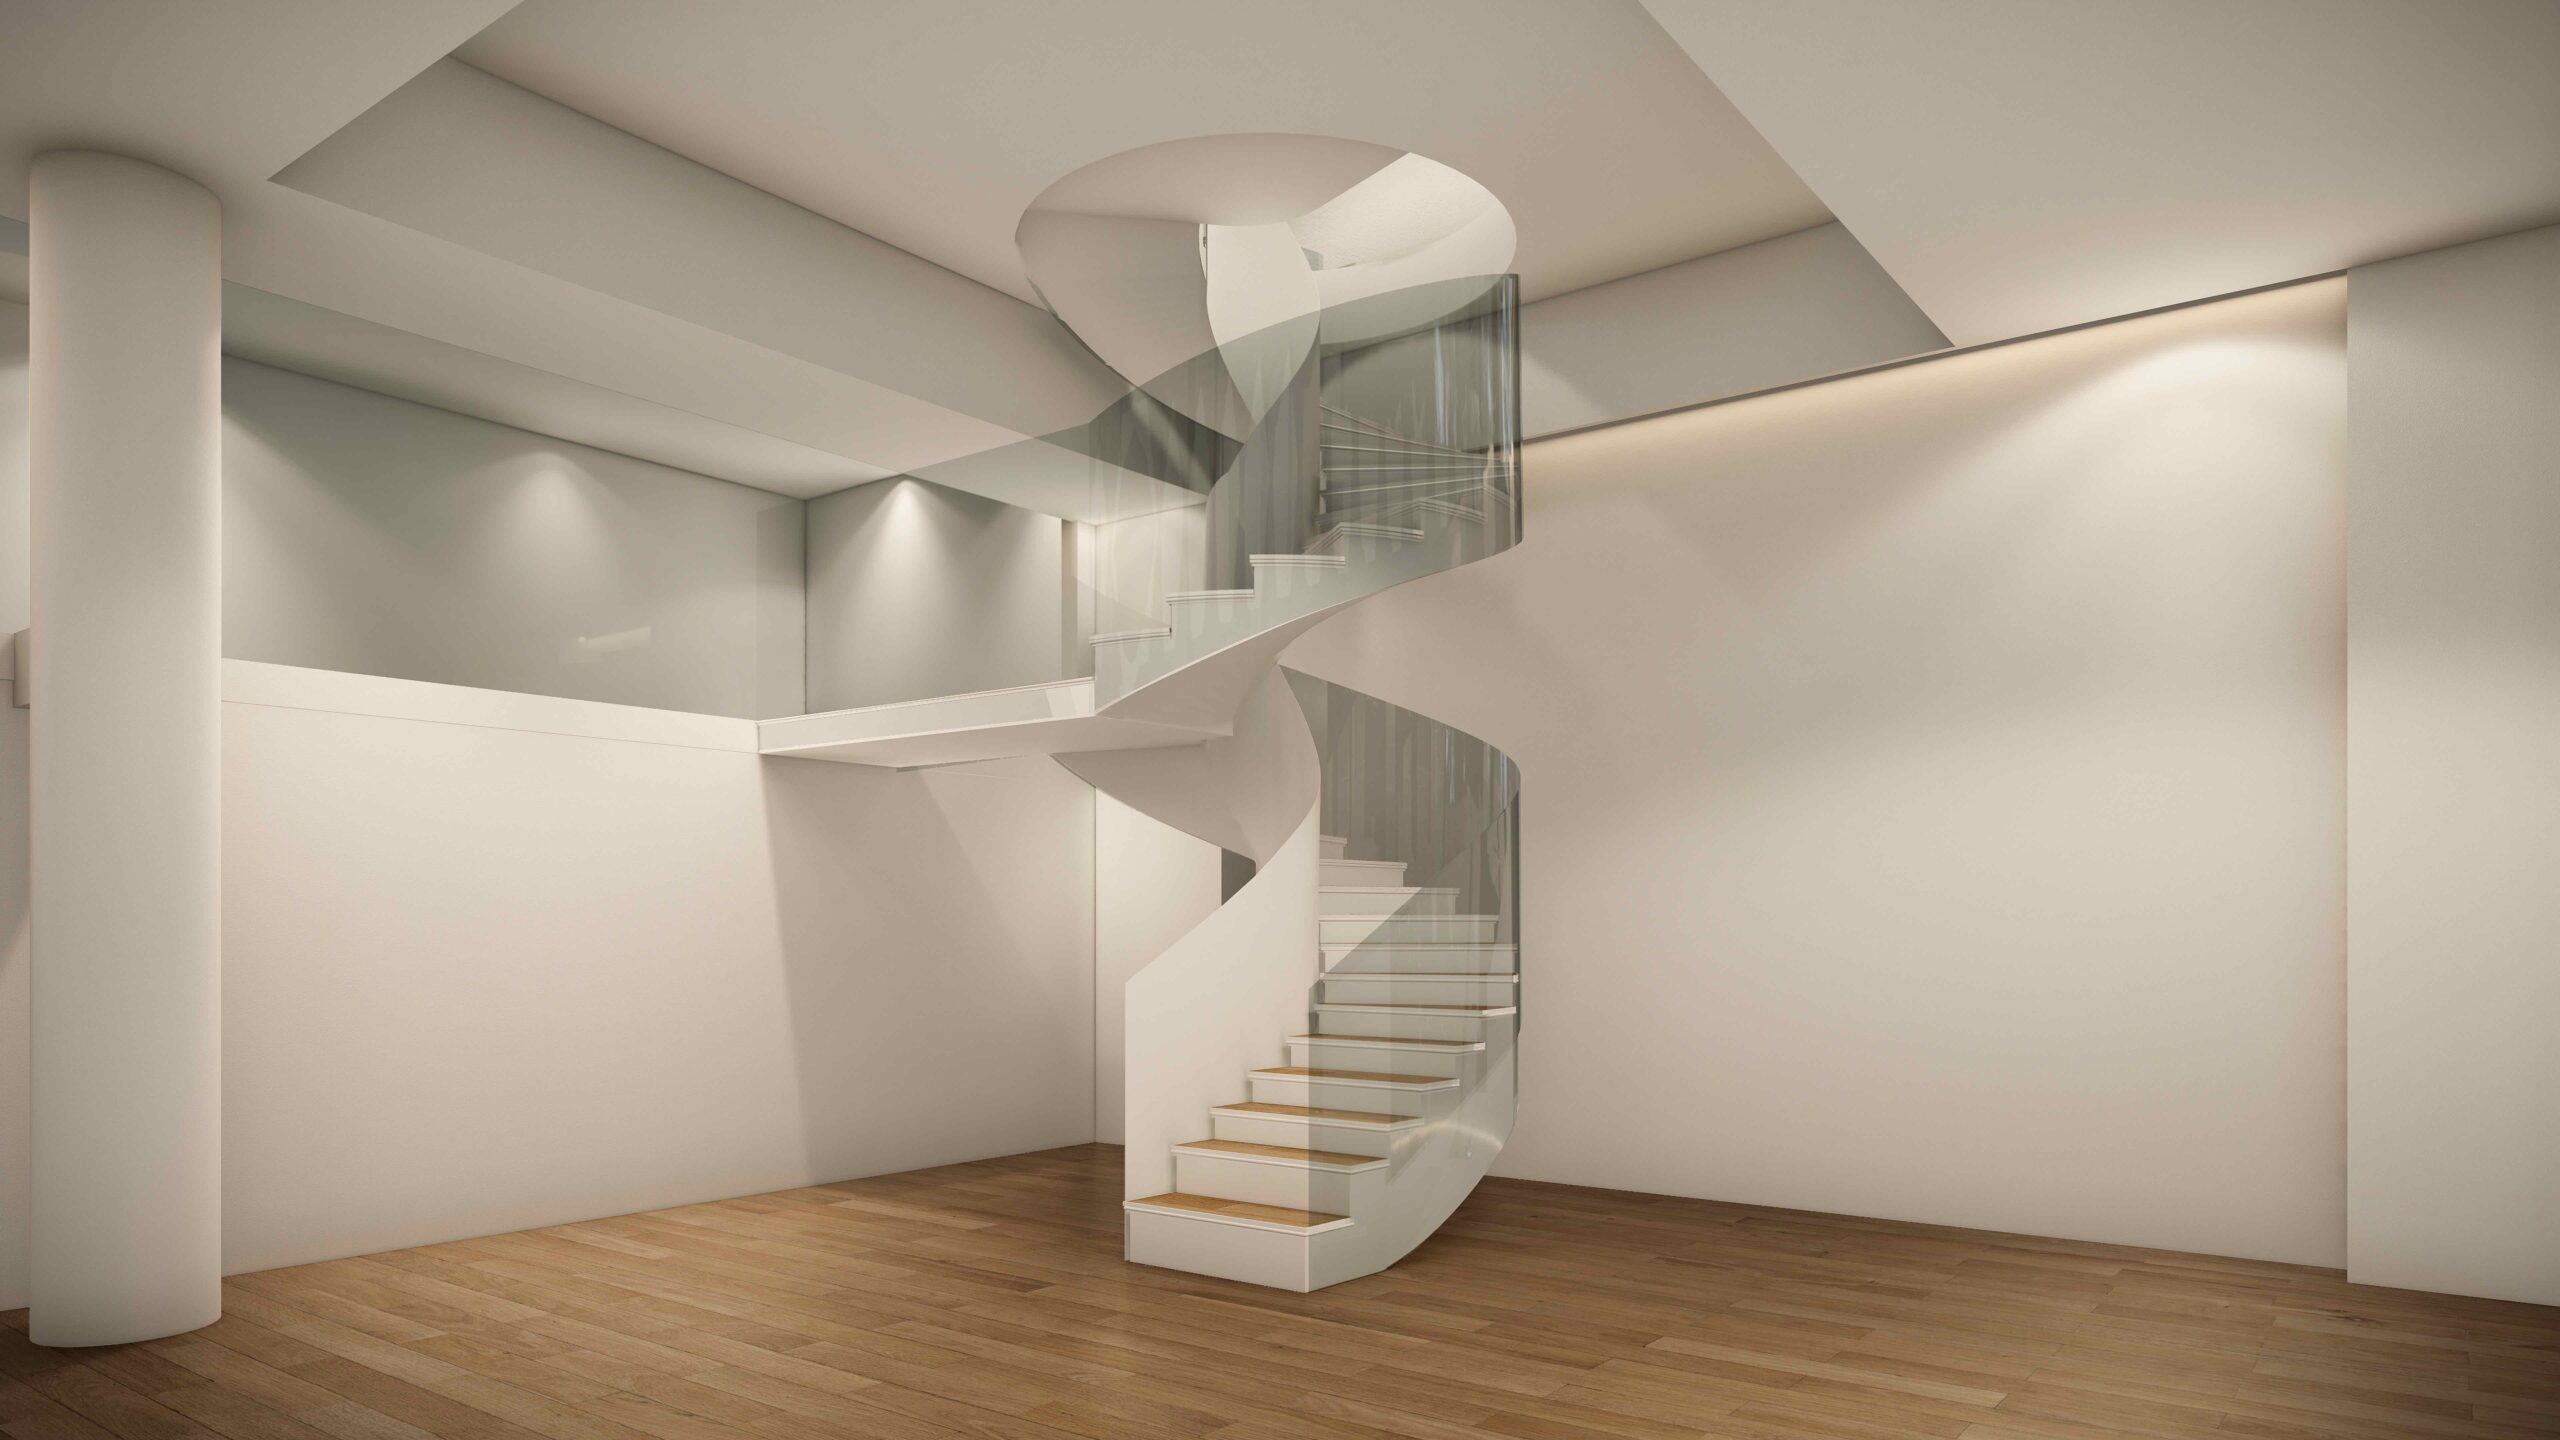 300 metri quadrati per 3 piani. Il “nuovo” spazio di Tornabuoni a Parigi, apertura a ottobre